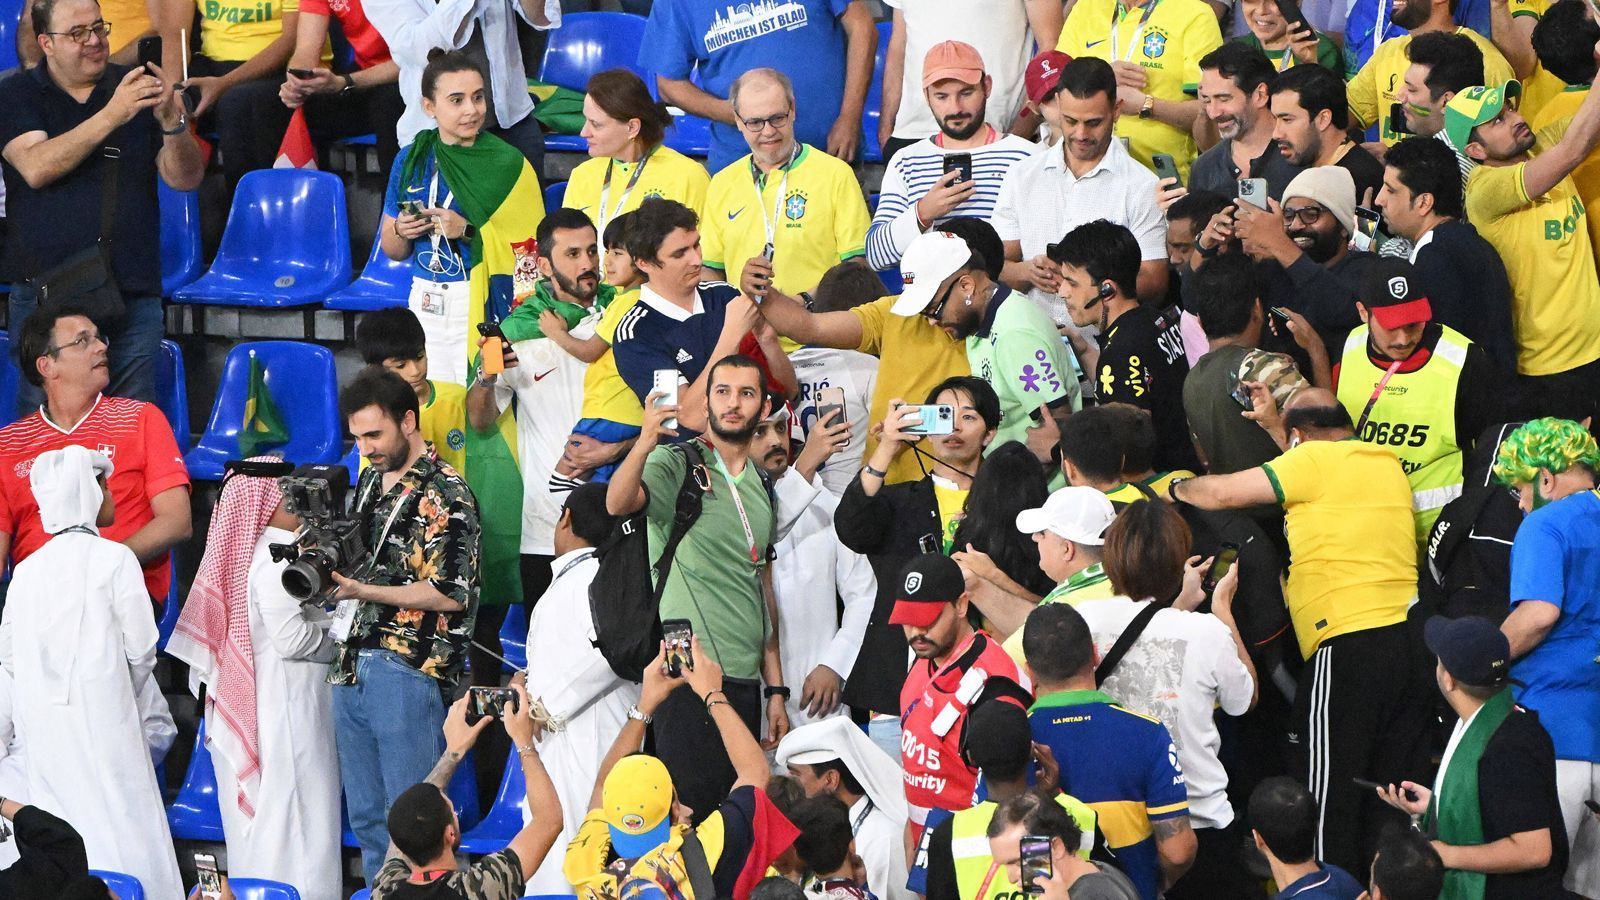 
                <strong>Neymar: Double des Superstars macht Brasiliens Fans verrückt</strong><br>
                Die Brasilien-Fans im Stadion waren hin und weg, das Neymar-Double musste für zahlreiche Fotos und Selfies herhalten.
              